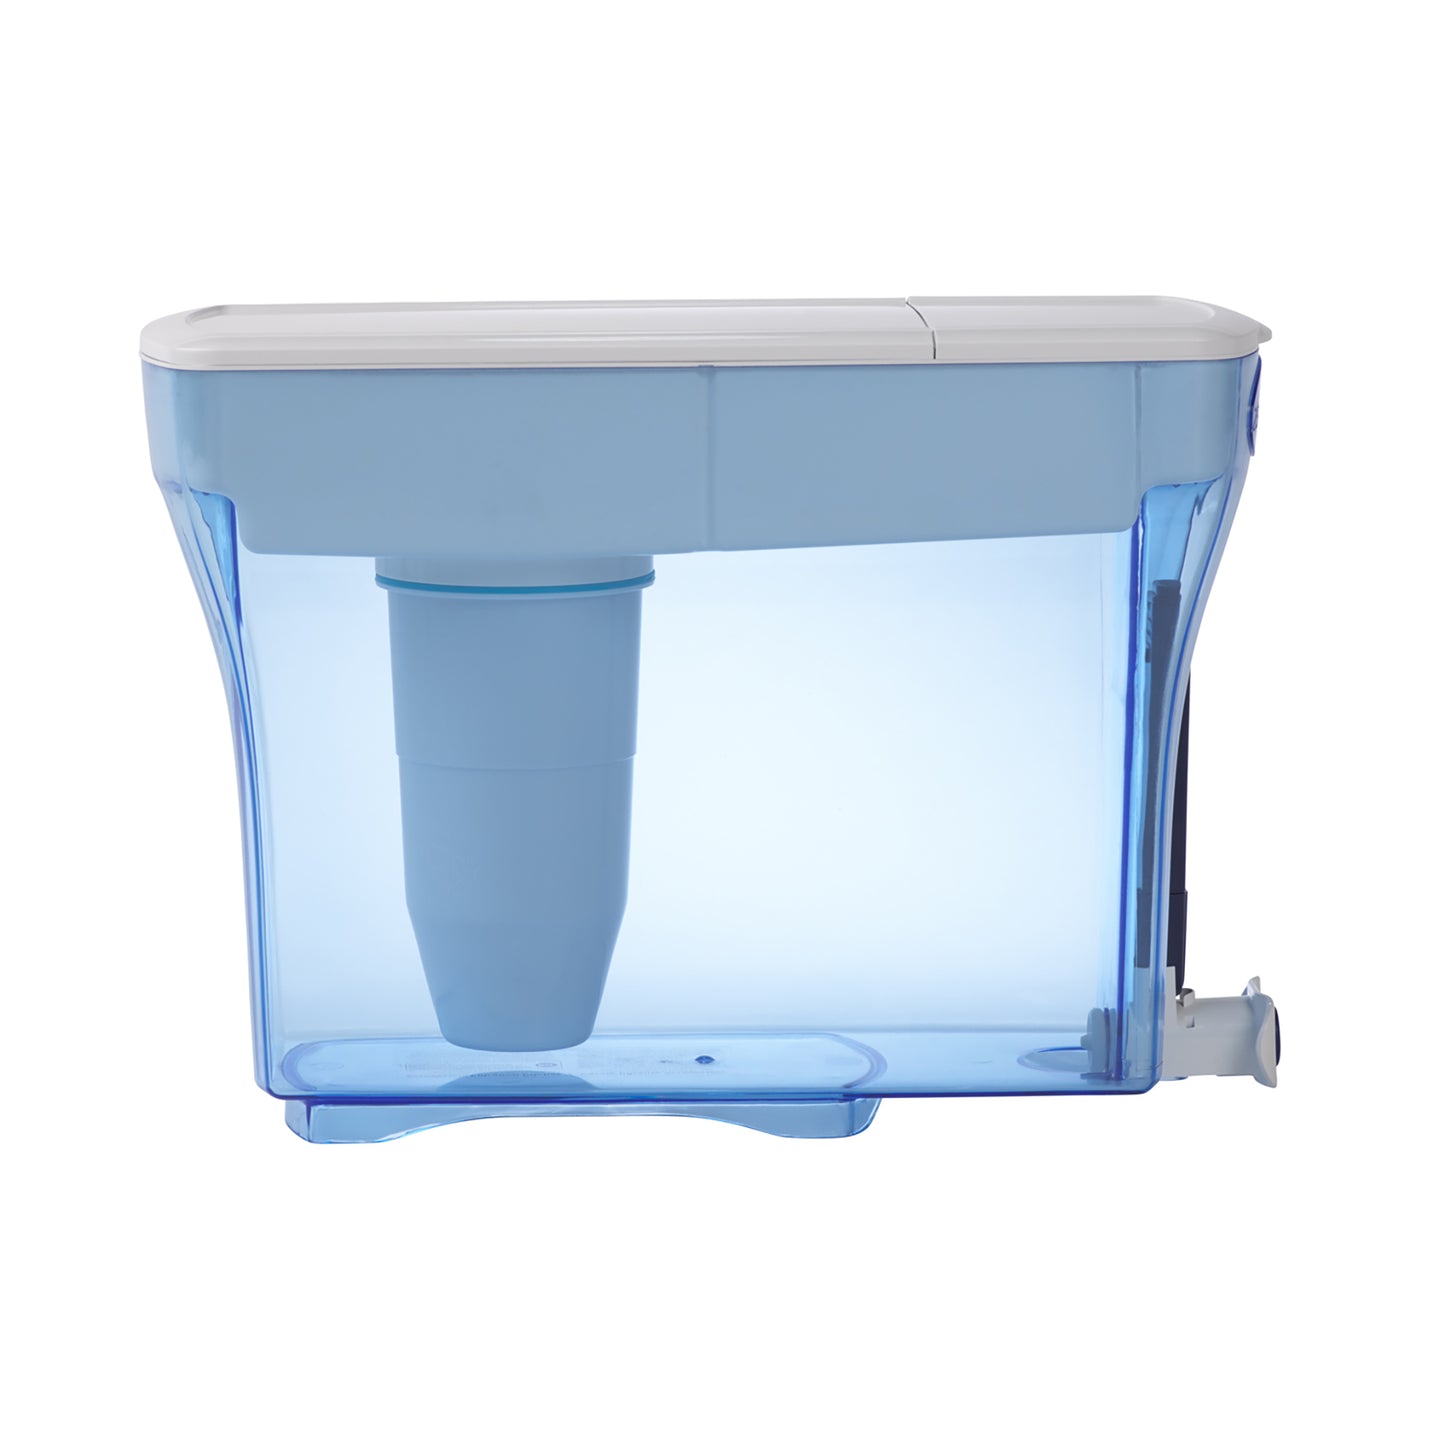 System filtrów o pojemności 5,4 litra | System filtrów na 23 filiżanki (5,4 litra)